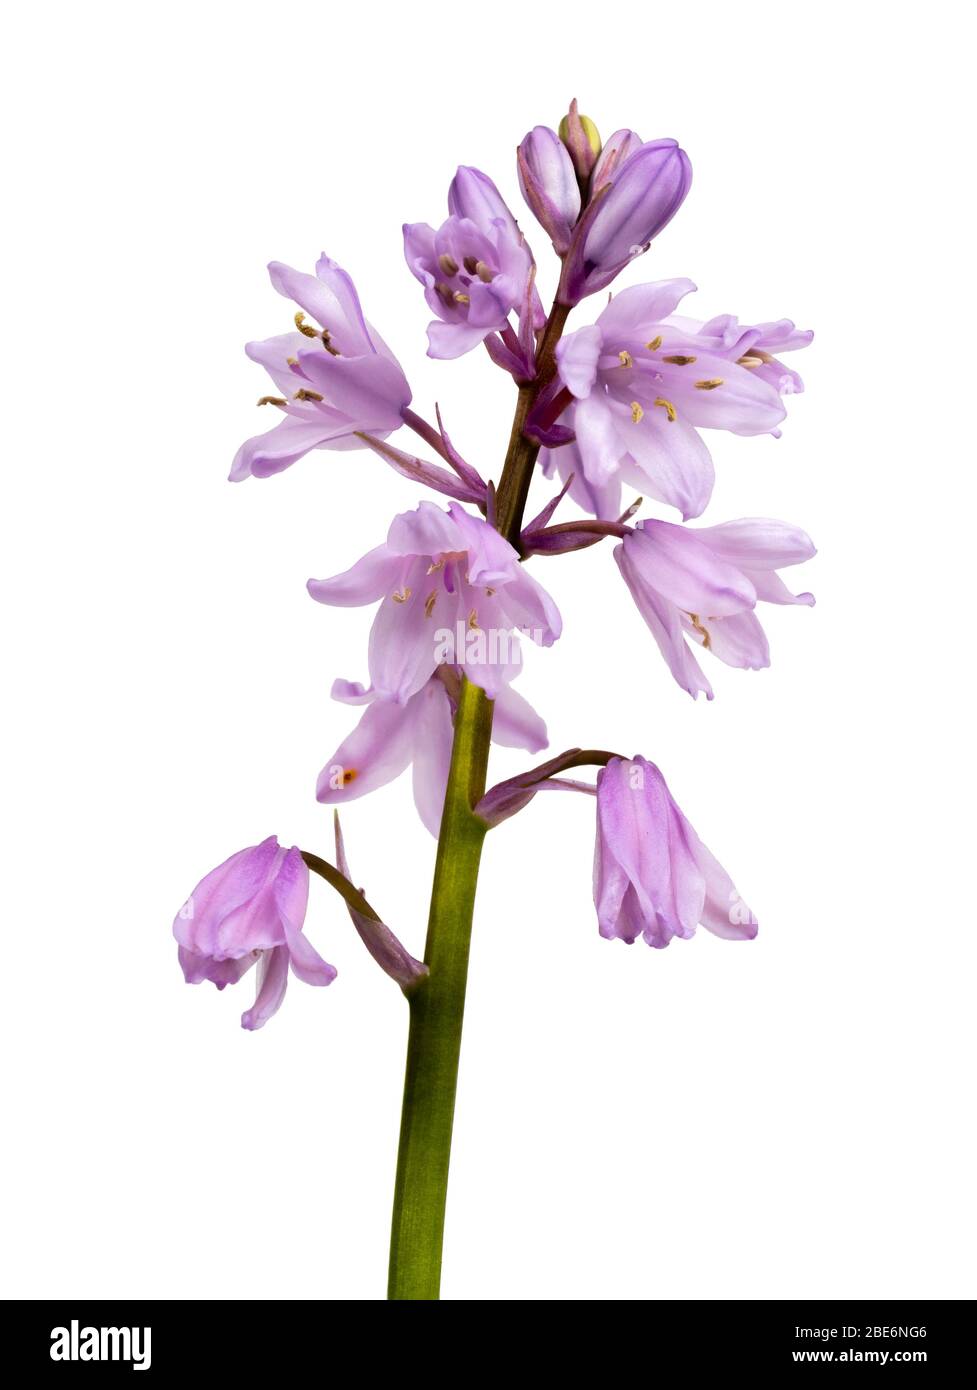 Forma a fiore rosa della croce bluebell spagnola e inglese, Hyacinthoides x massartiana, su sfondo bianco Foto Stock